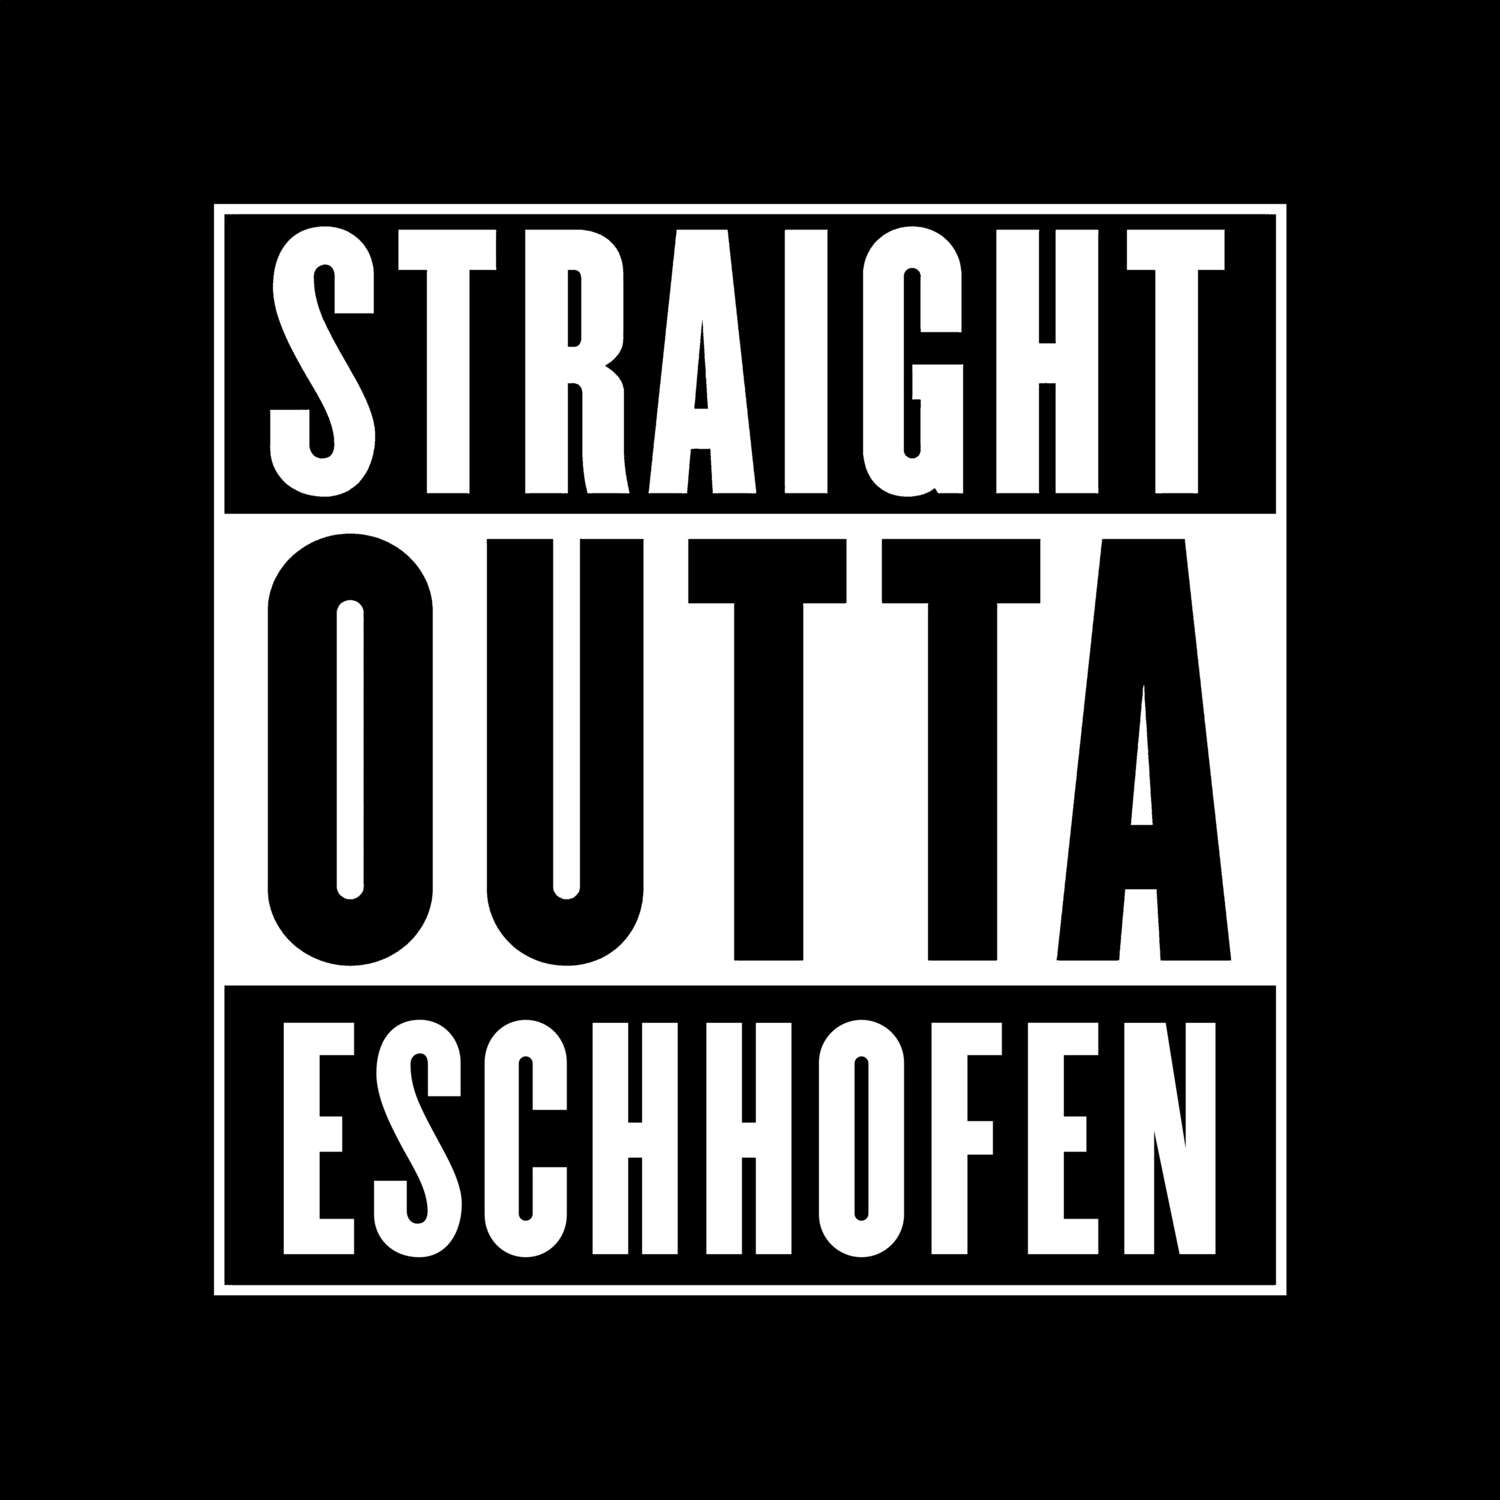 Eschhofen T-Shirt »Straight Outta«